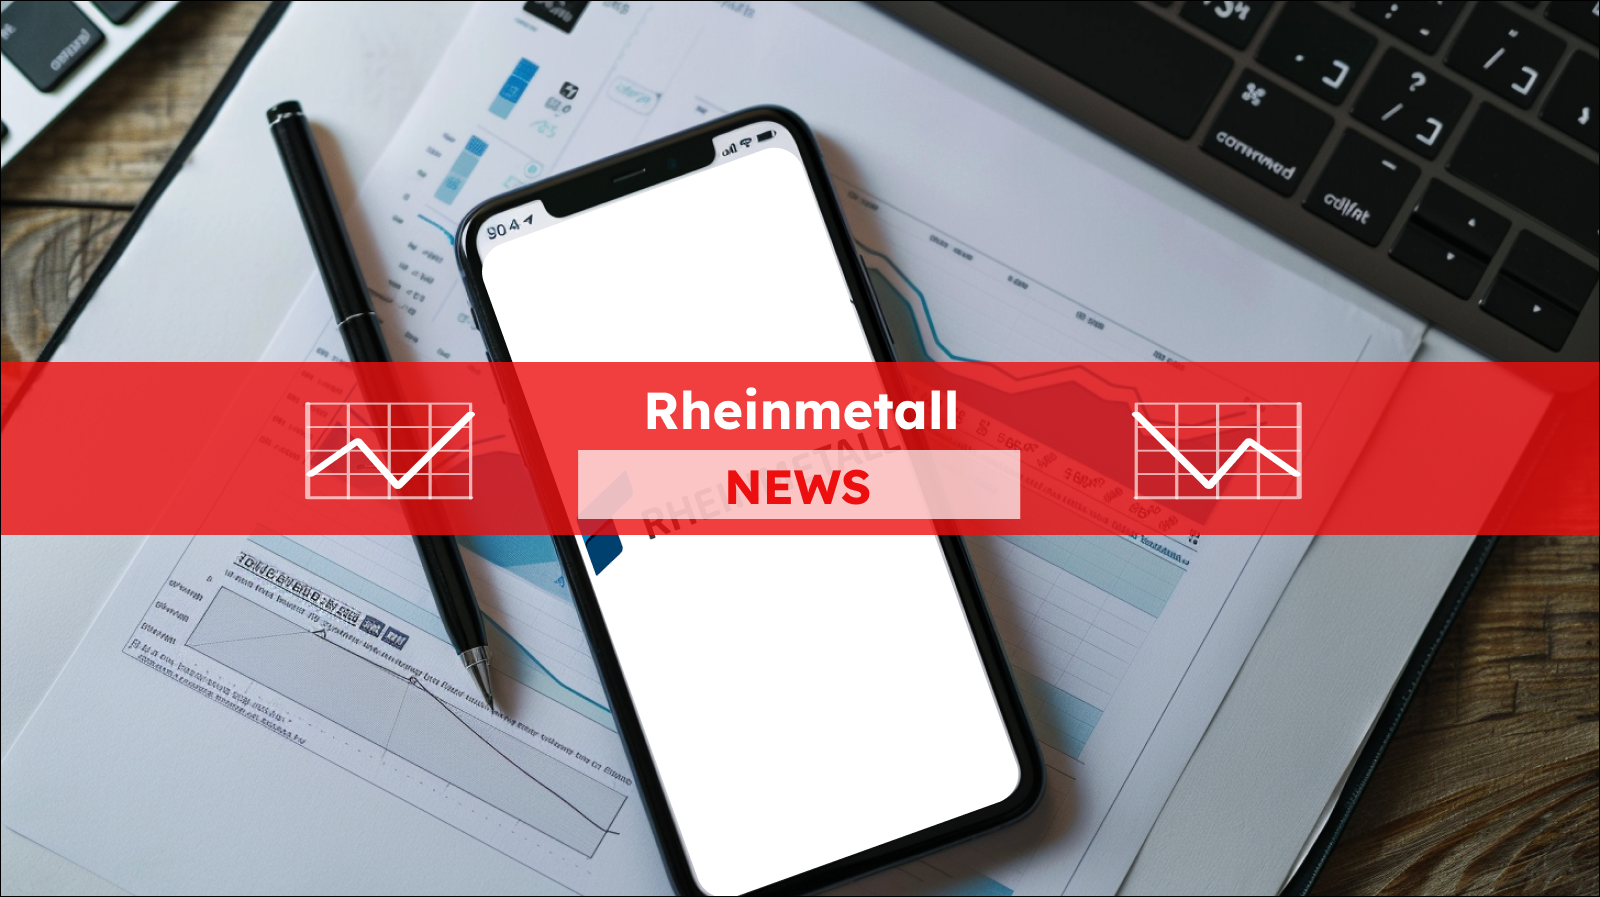 Ein Arbeitsplatz mit einem Smartphone, auf dessen Display das Logo von RHEINMETALL, neben Papieren mit Diagrammen, mit einem Rheinmetall NEWS Banner